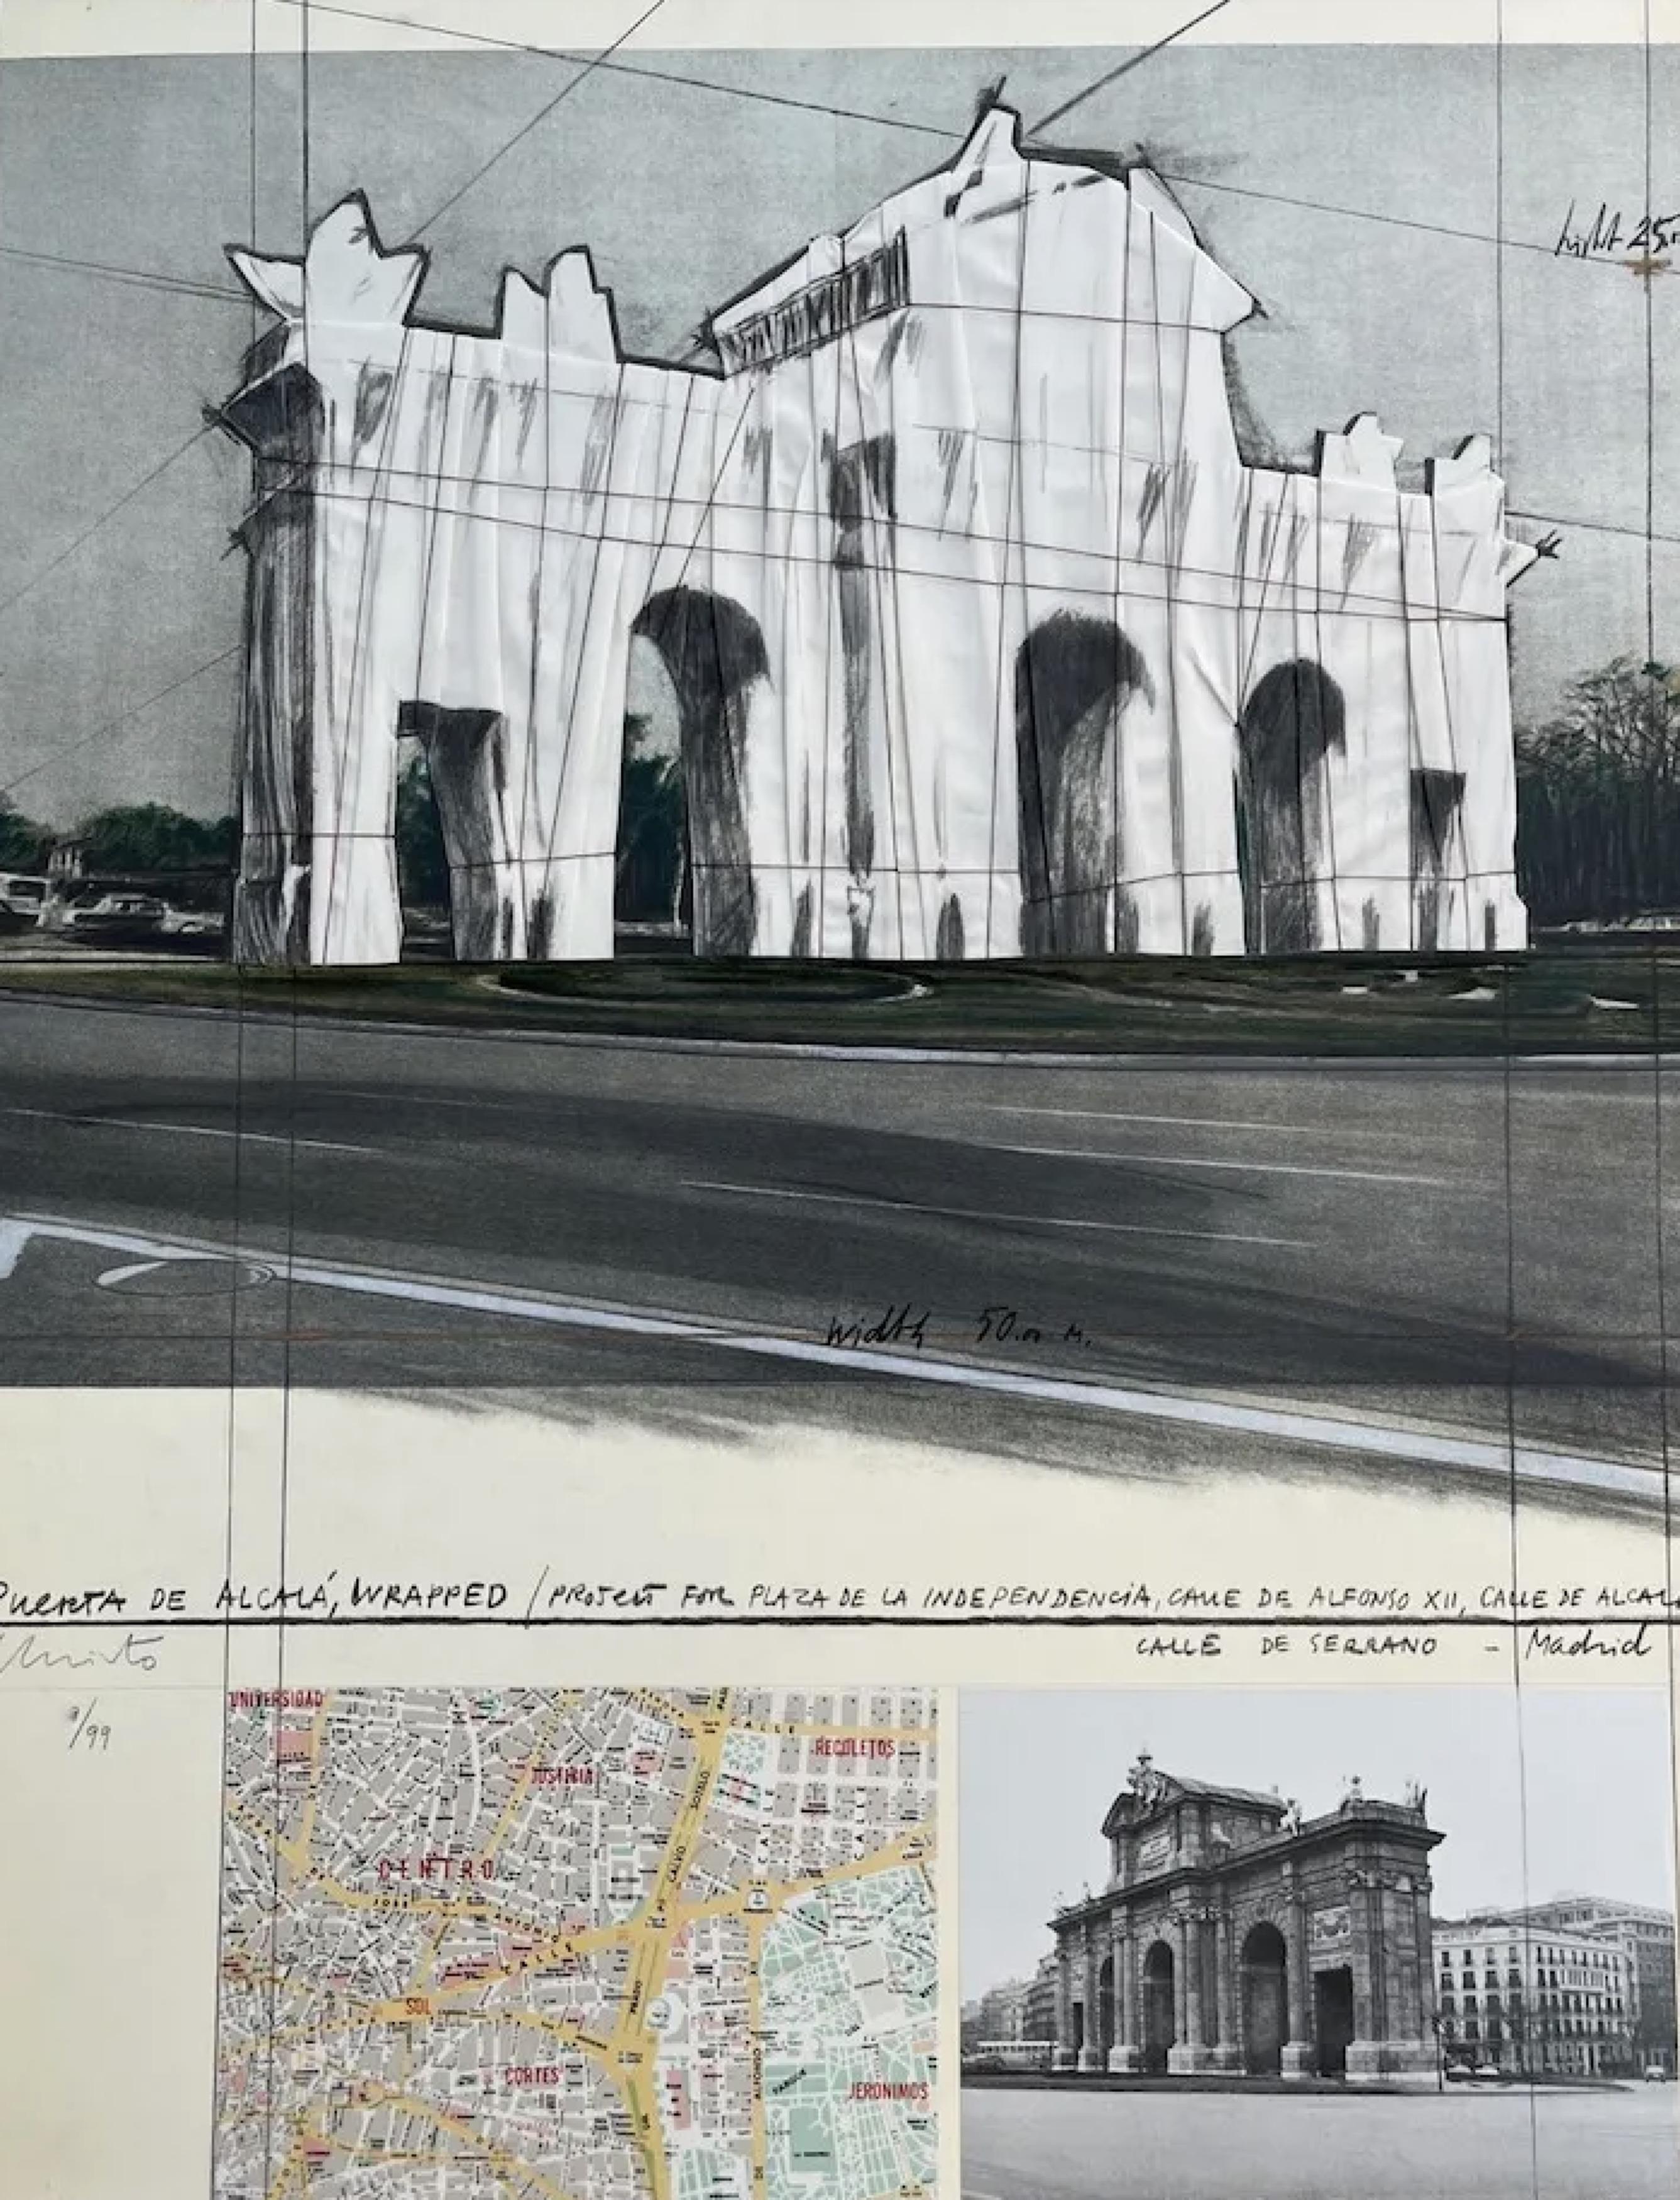 Puerta de Alcalá, envuelta /proyecto para Madrid - Print by Javacheff Christo